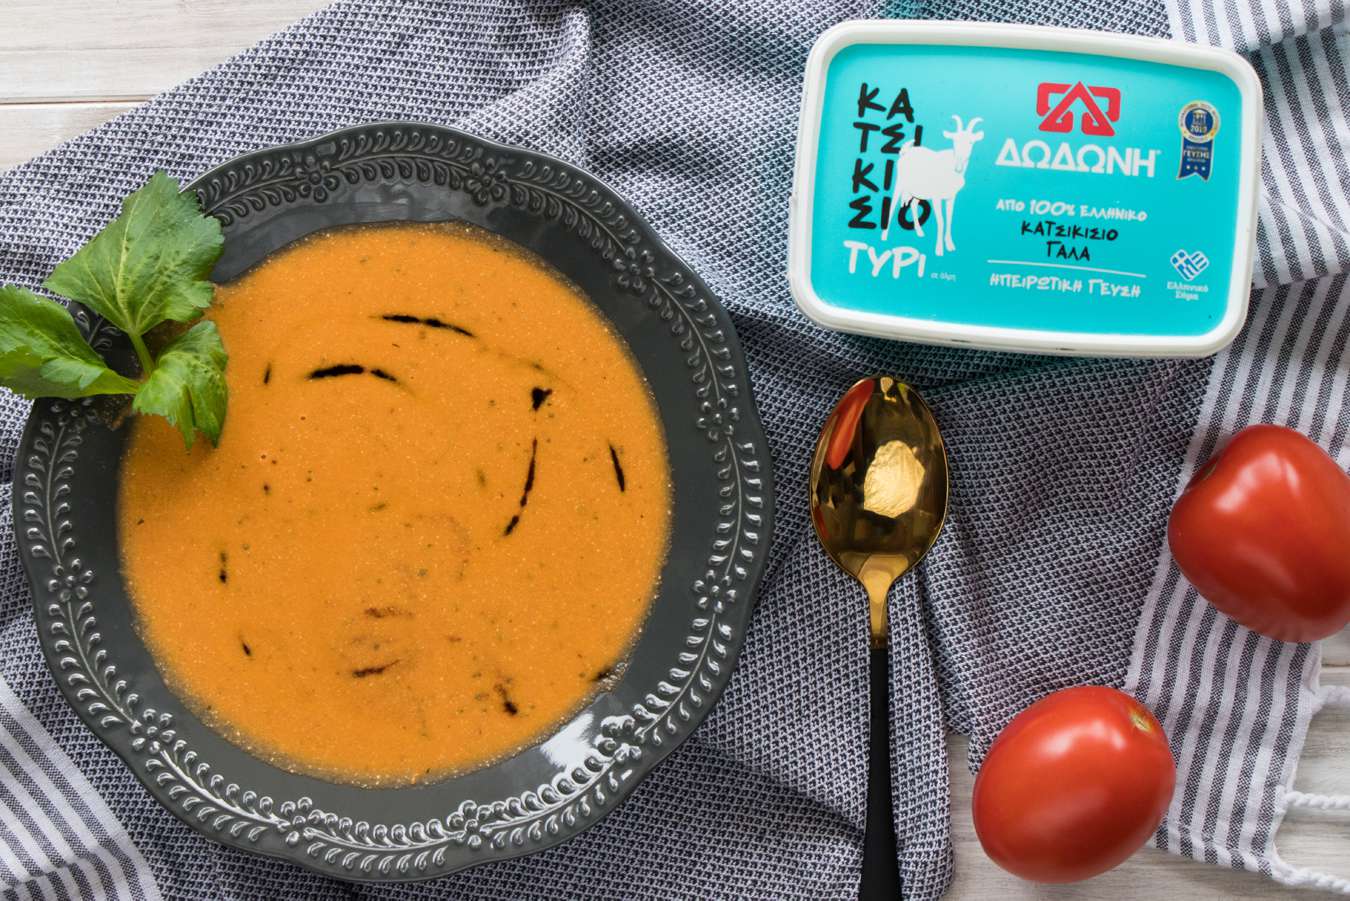 Ψητή ντοματόσουπα με κατσικίσιο τυρί